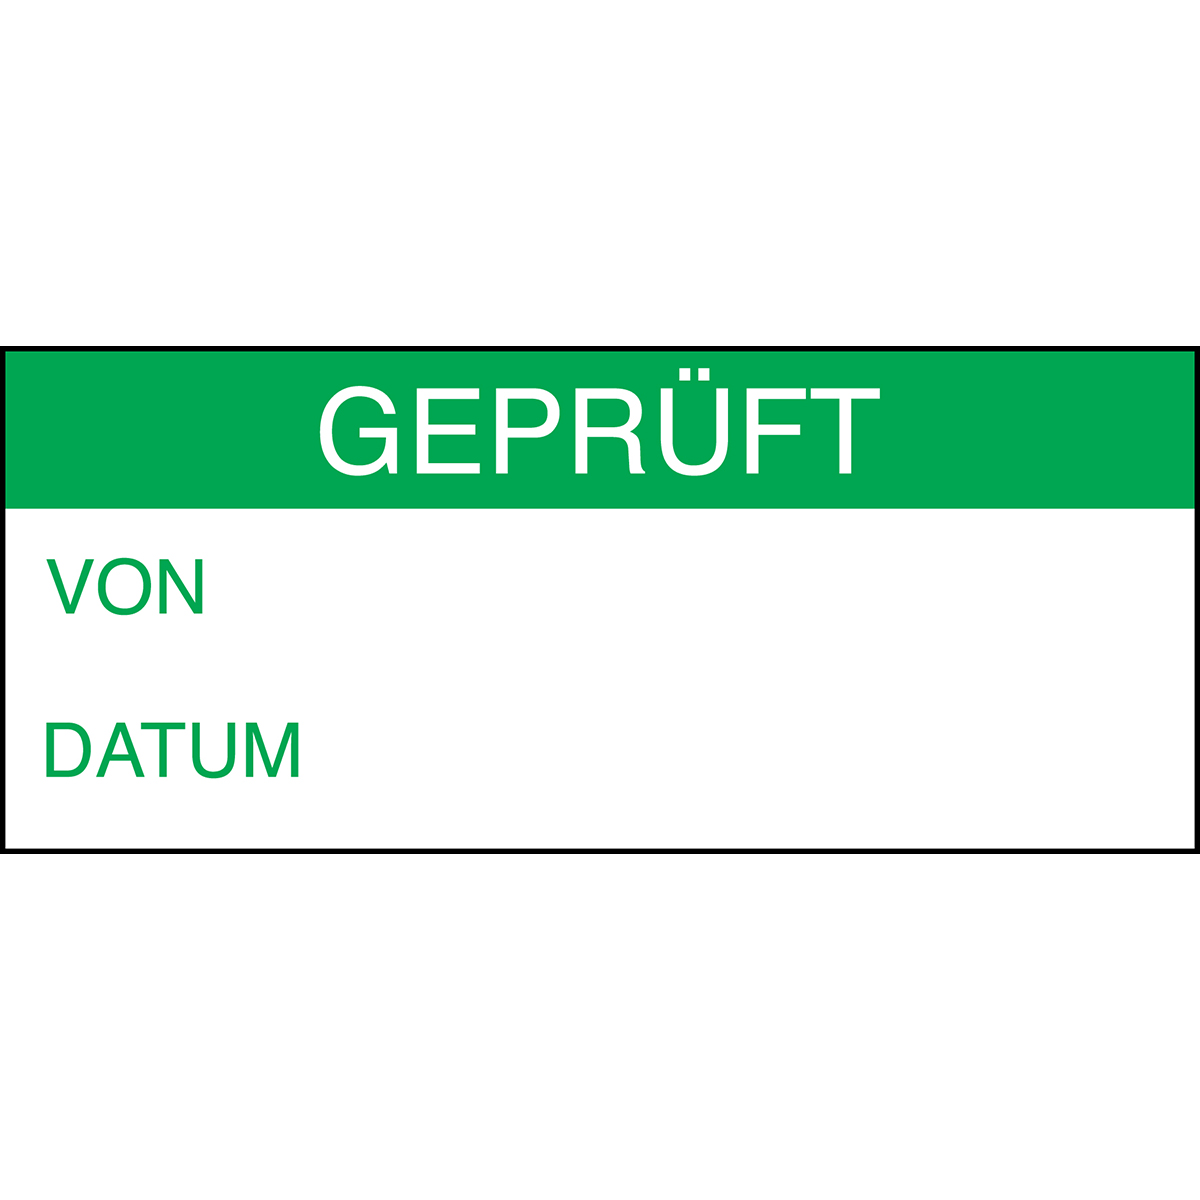 BRADY Beschriftbare Etiketten zur Qualitätskontrolle "GEPRÜFT" WO-GEPRUFT-38*16-B500 230031